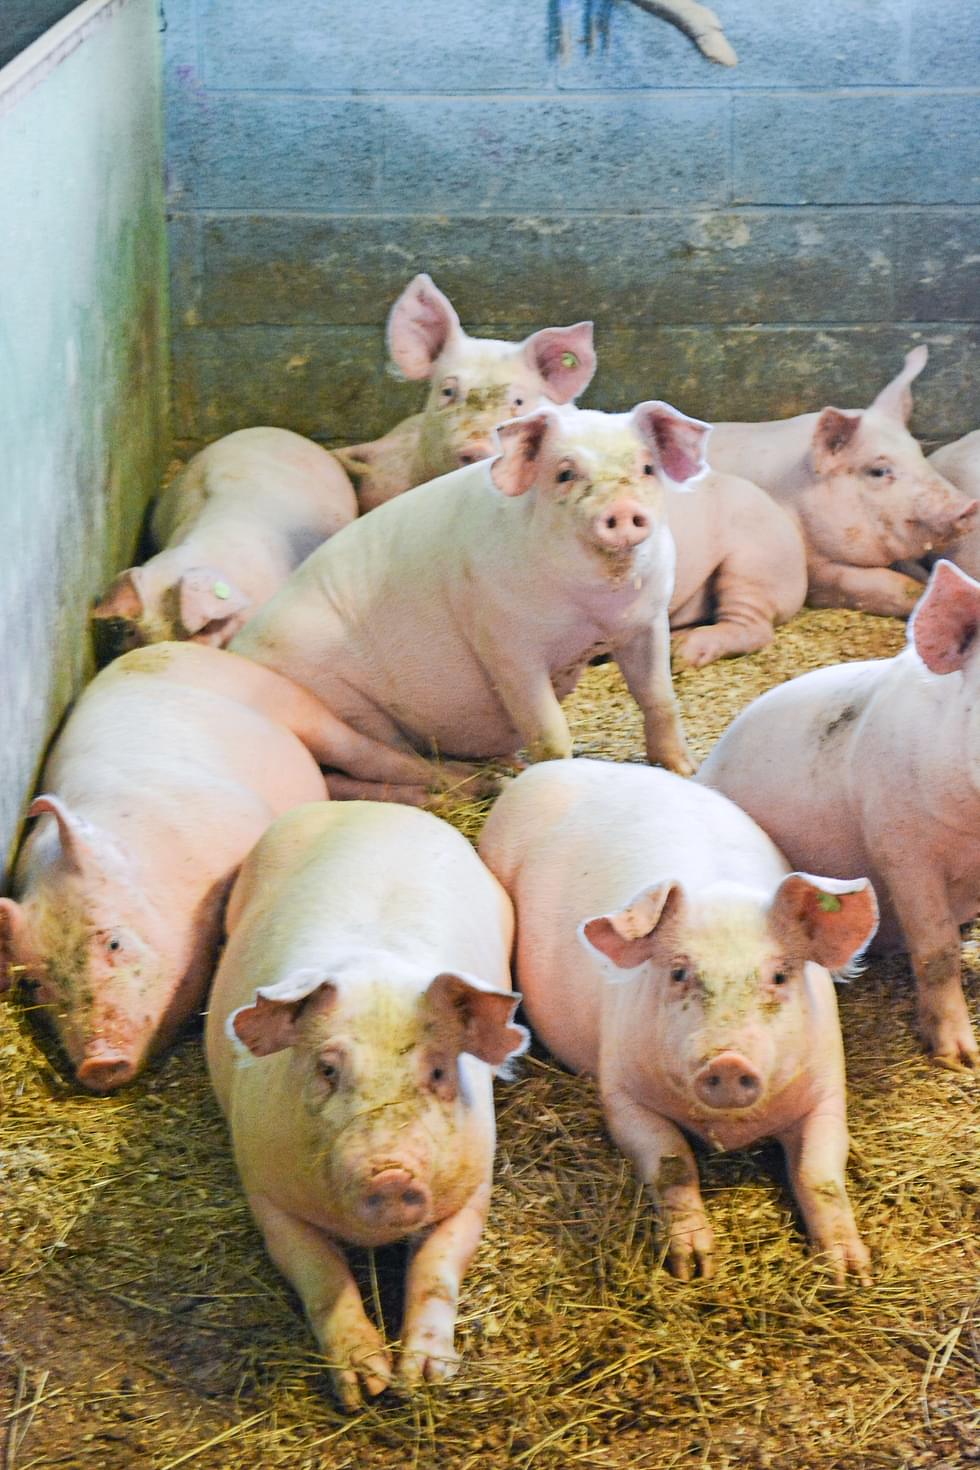 MTK Pohjois-Karjala korostaa suomalaisen sianlihatuotannon vastuullisuutta verrattuna ulkomaiseen tuotantoon.